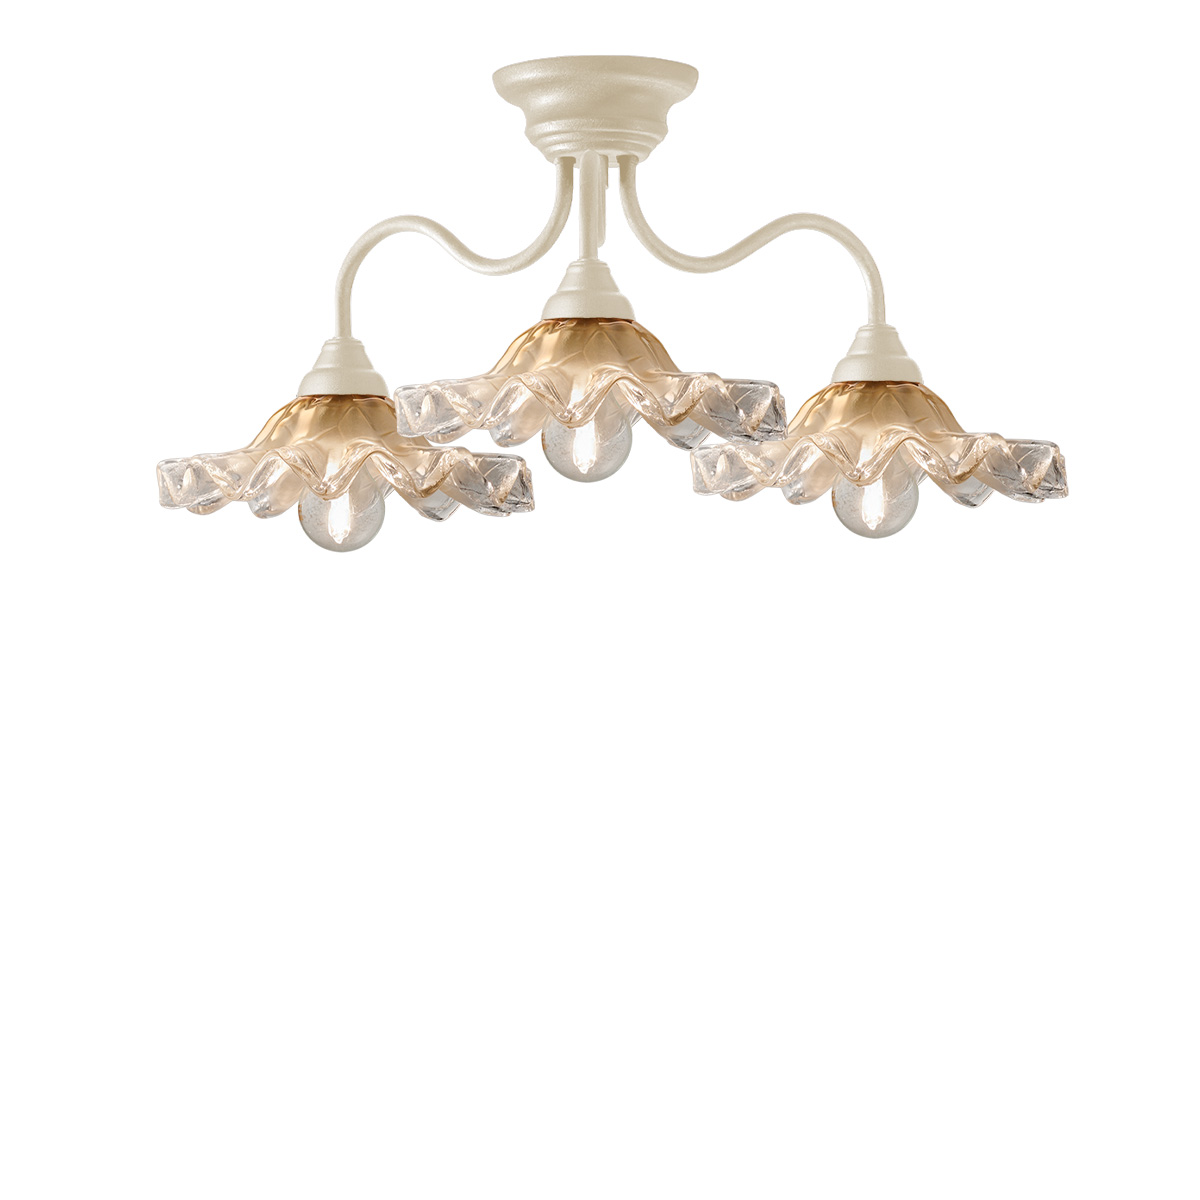 Χειροποίητο φωτιστικό οροφής με γυαλιά Μουράνο ΣΥΡΟΣ handmade ceiling lamp with Murano glass